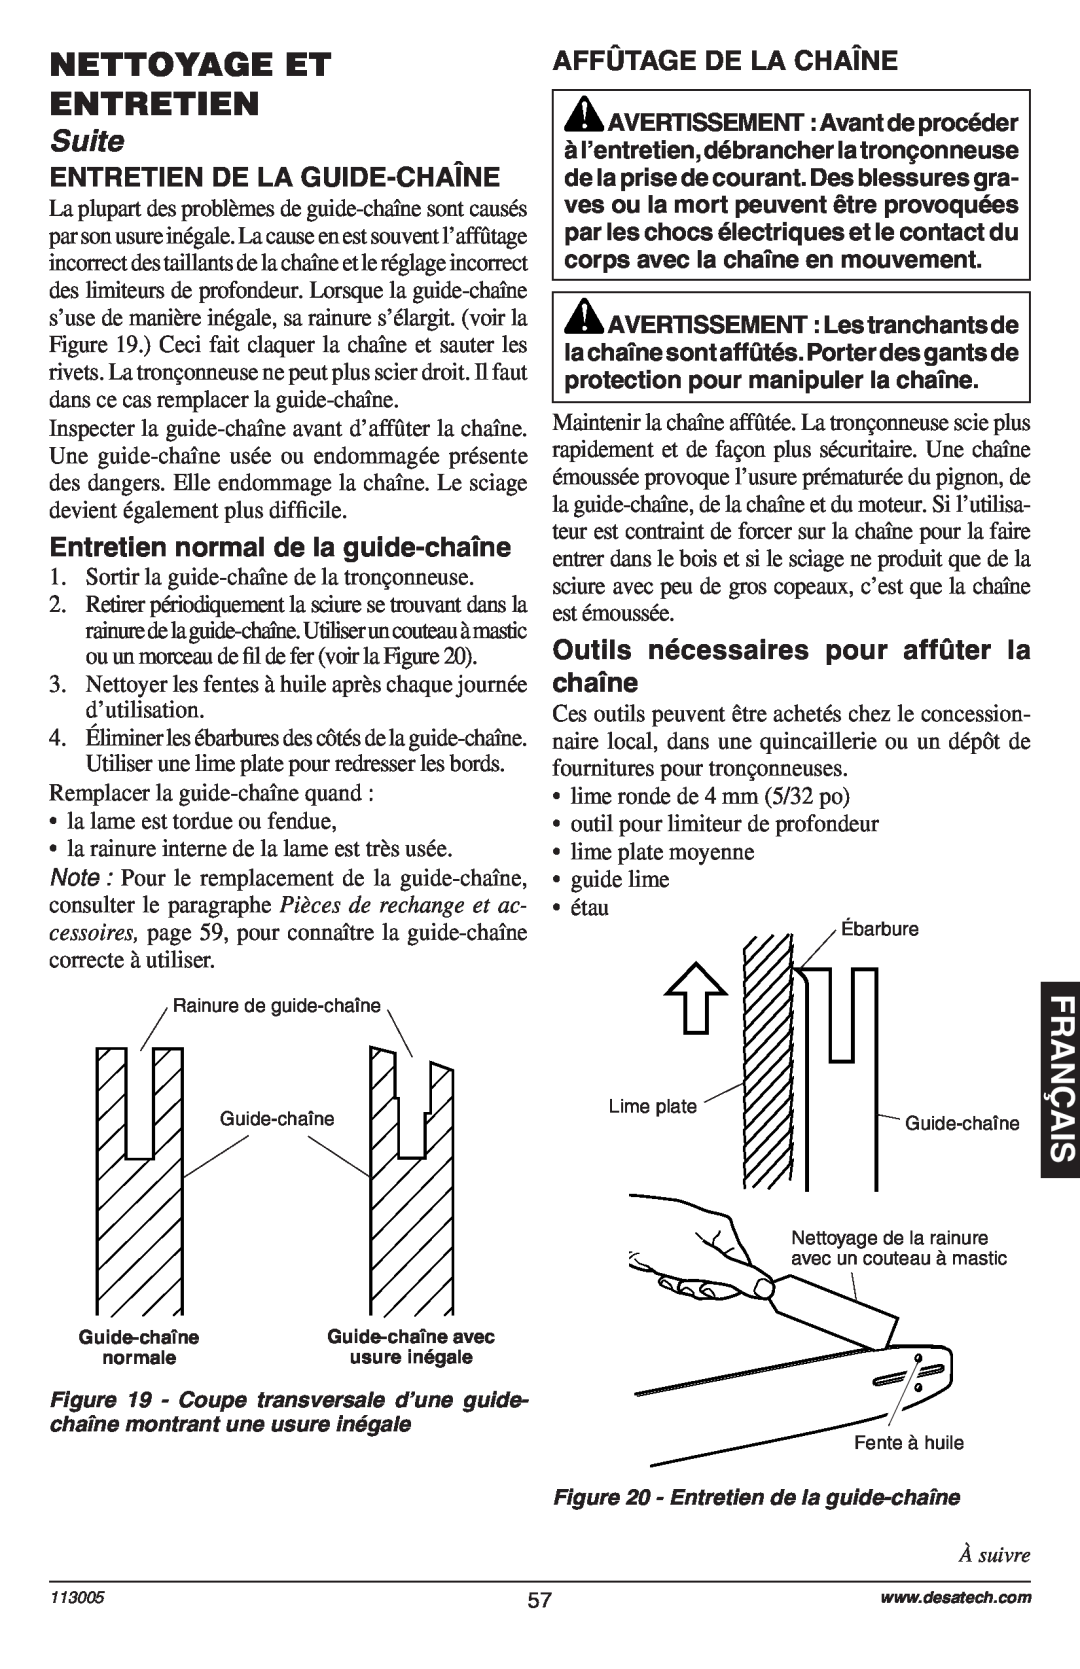 Remington Power Tools Electric Chain Saw Entretien De La Guide-Chaîne, Entretien normal de la guide-chaîne, Suite 